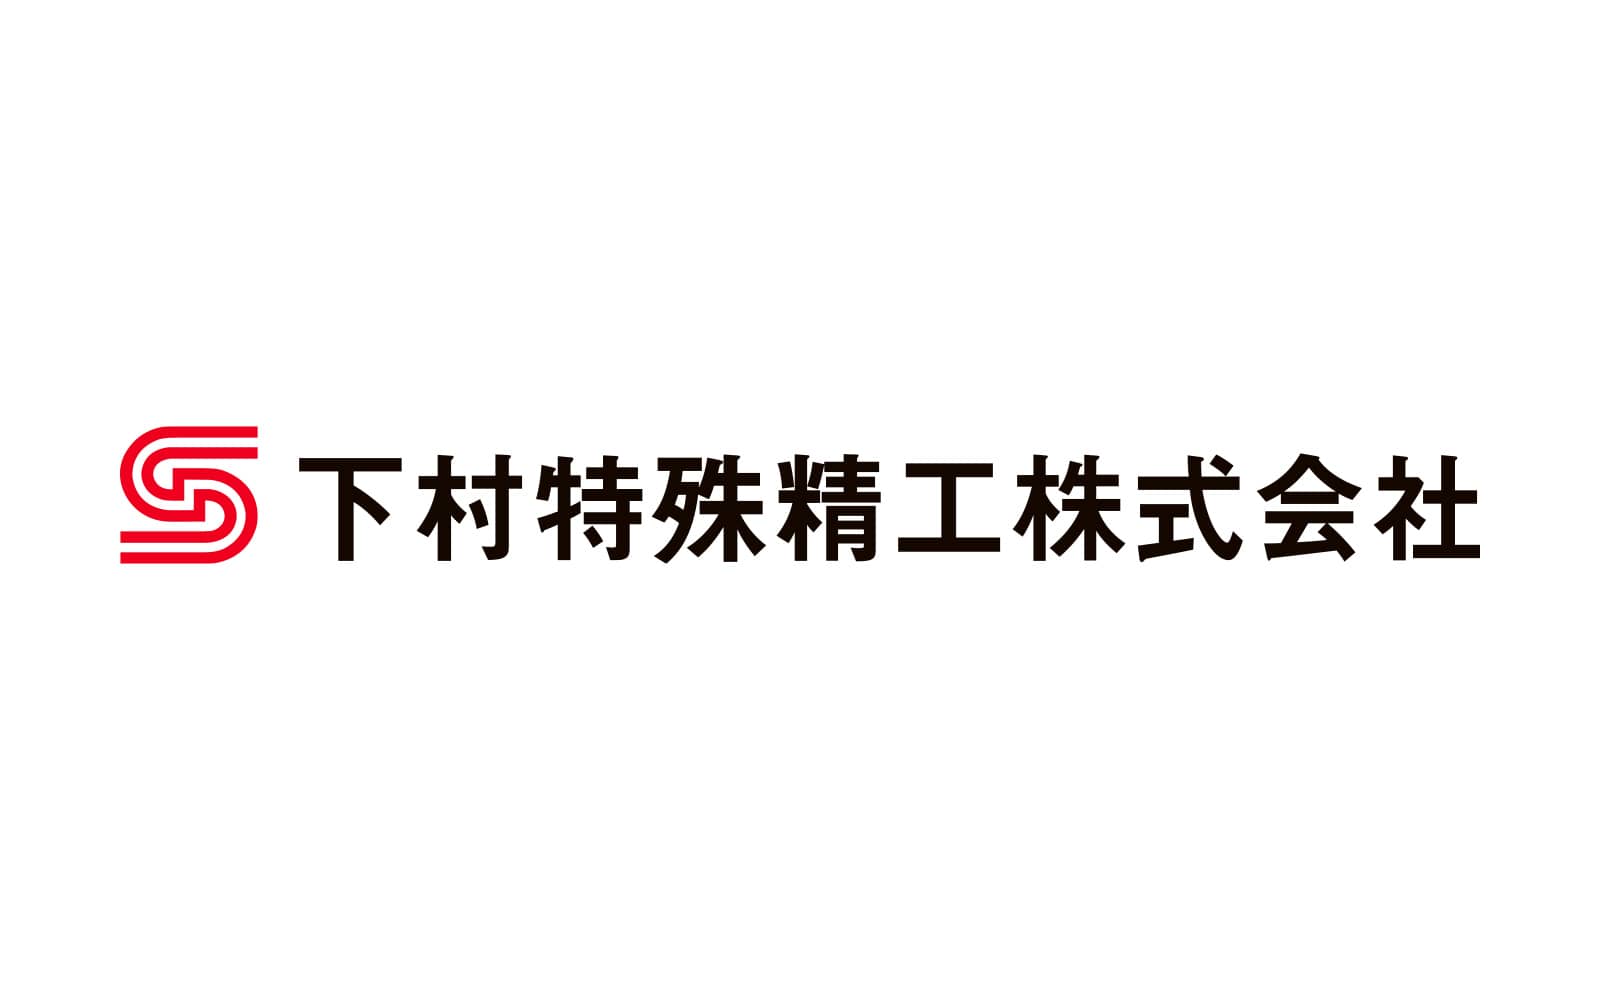 Shimomura Tokushu Seiko Co., Ltd.